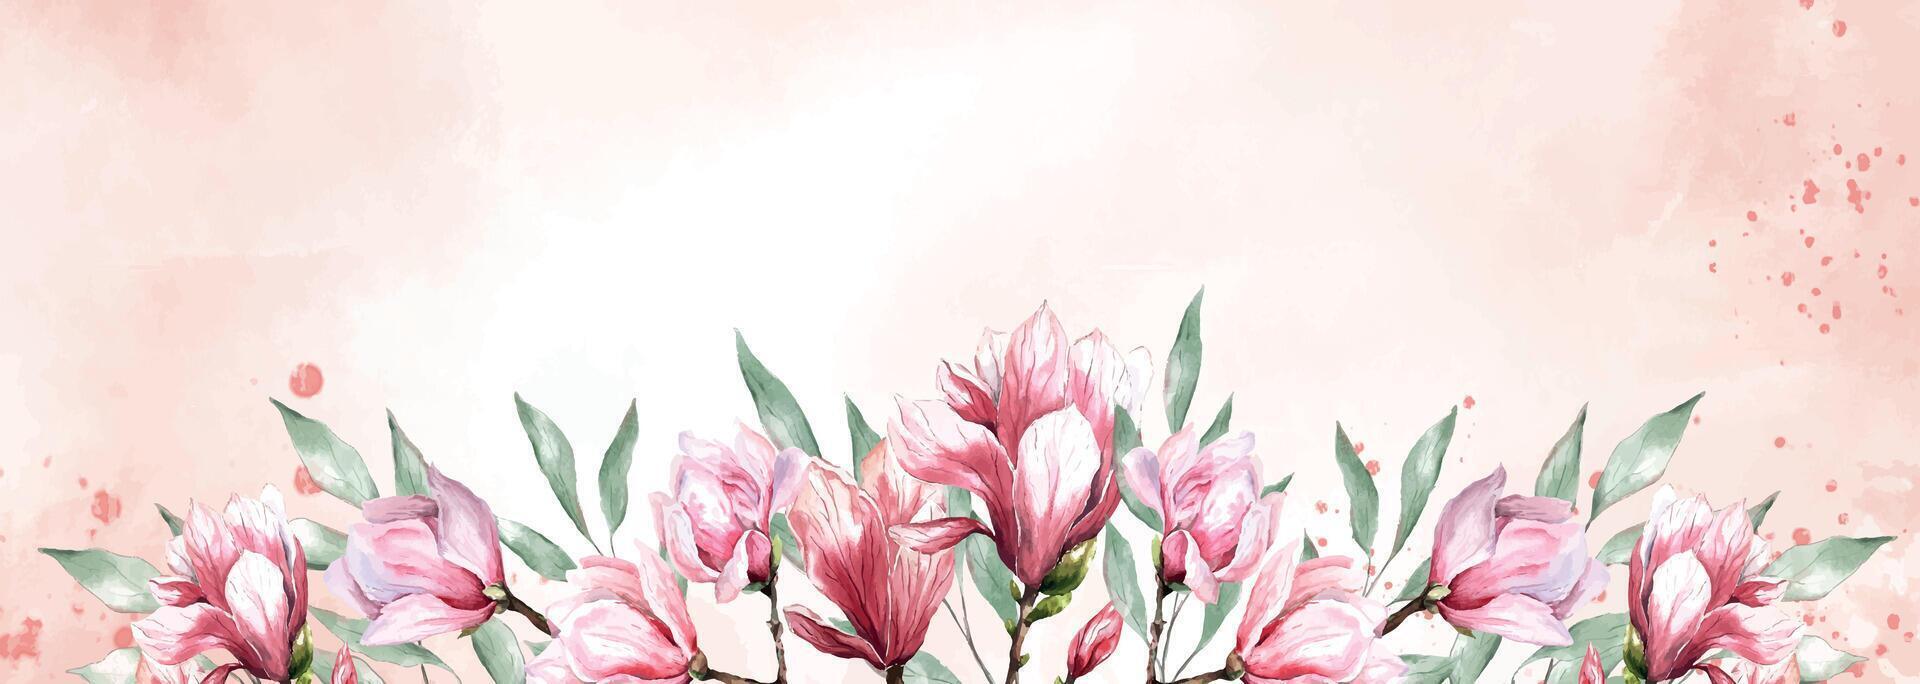 fresco magnólia flor botânico aguarela ilustração floral Projeto pétalas florescendo Primavera tropical Rosa lindo plantar fronteira fundo modelo vetor